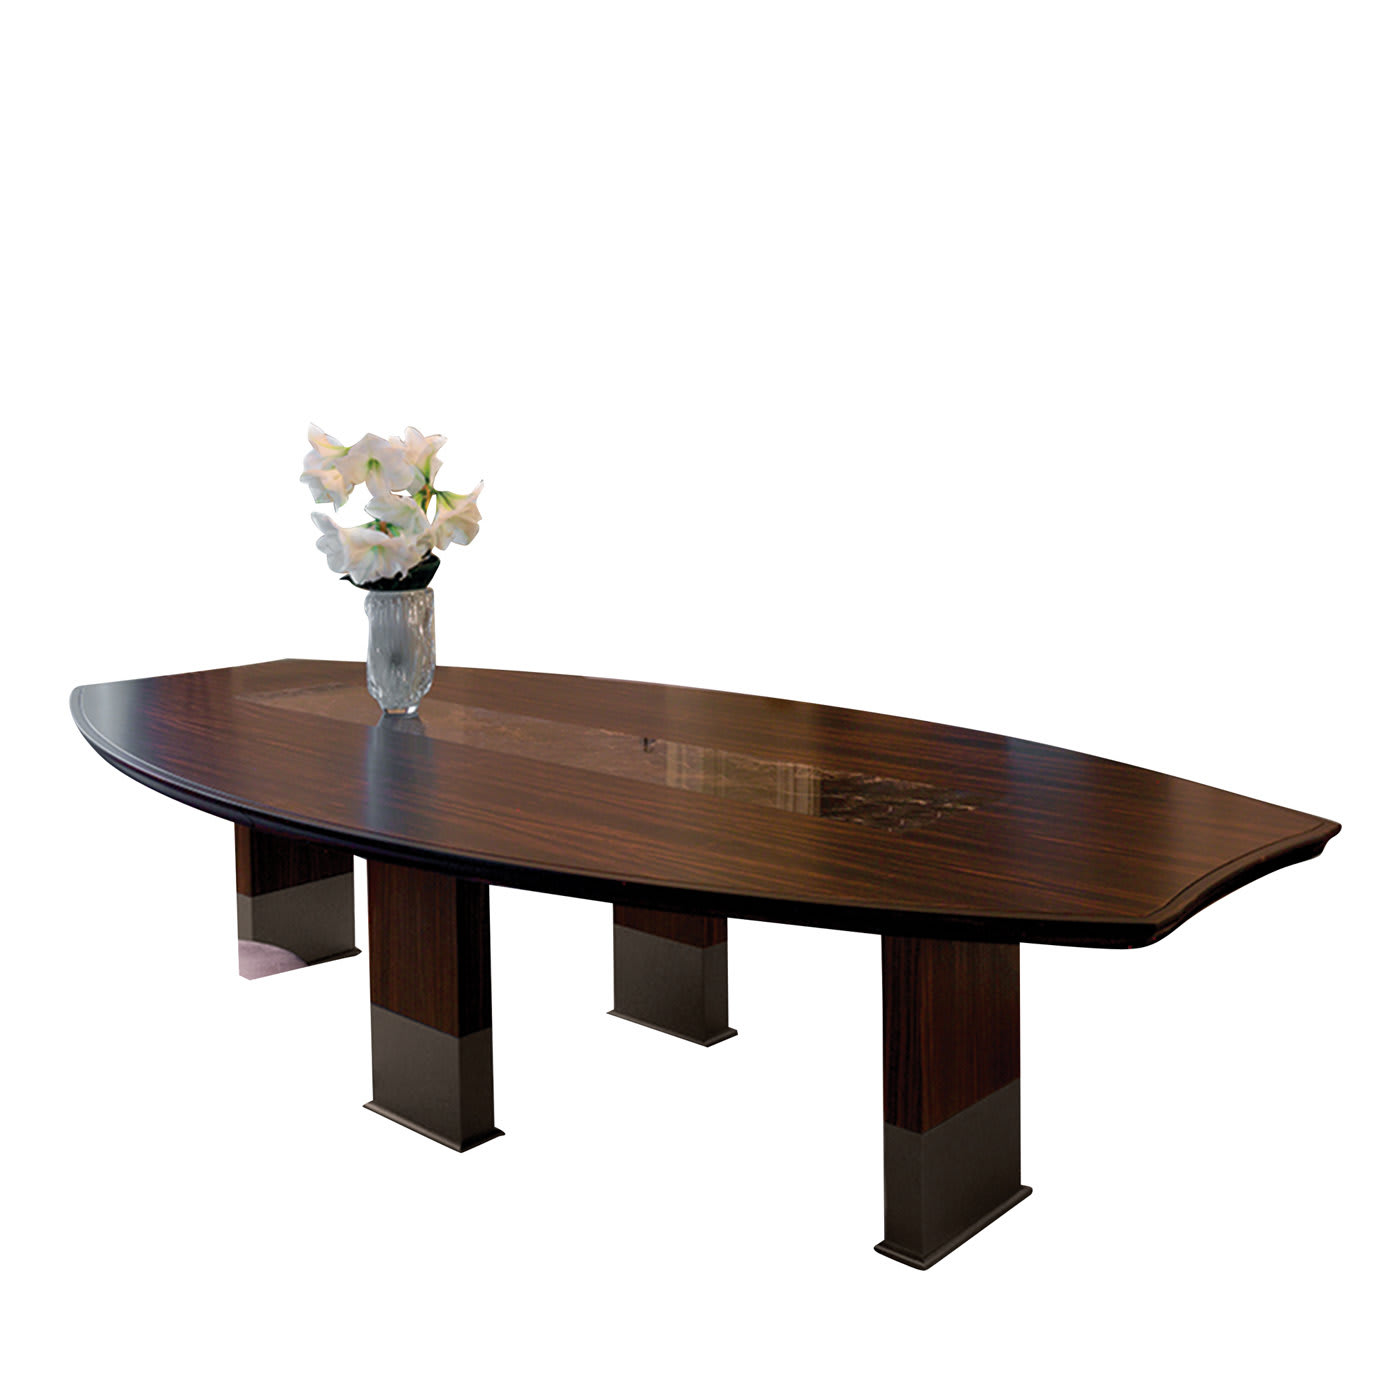 Edward Table by Elle Studio - Longhi